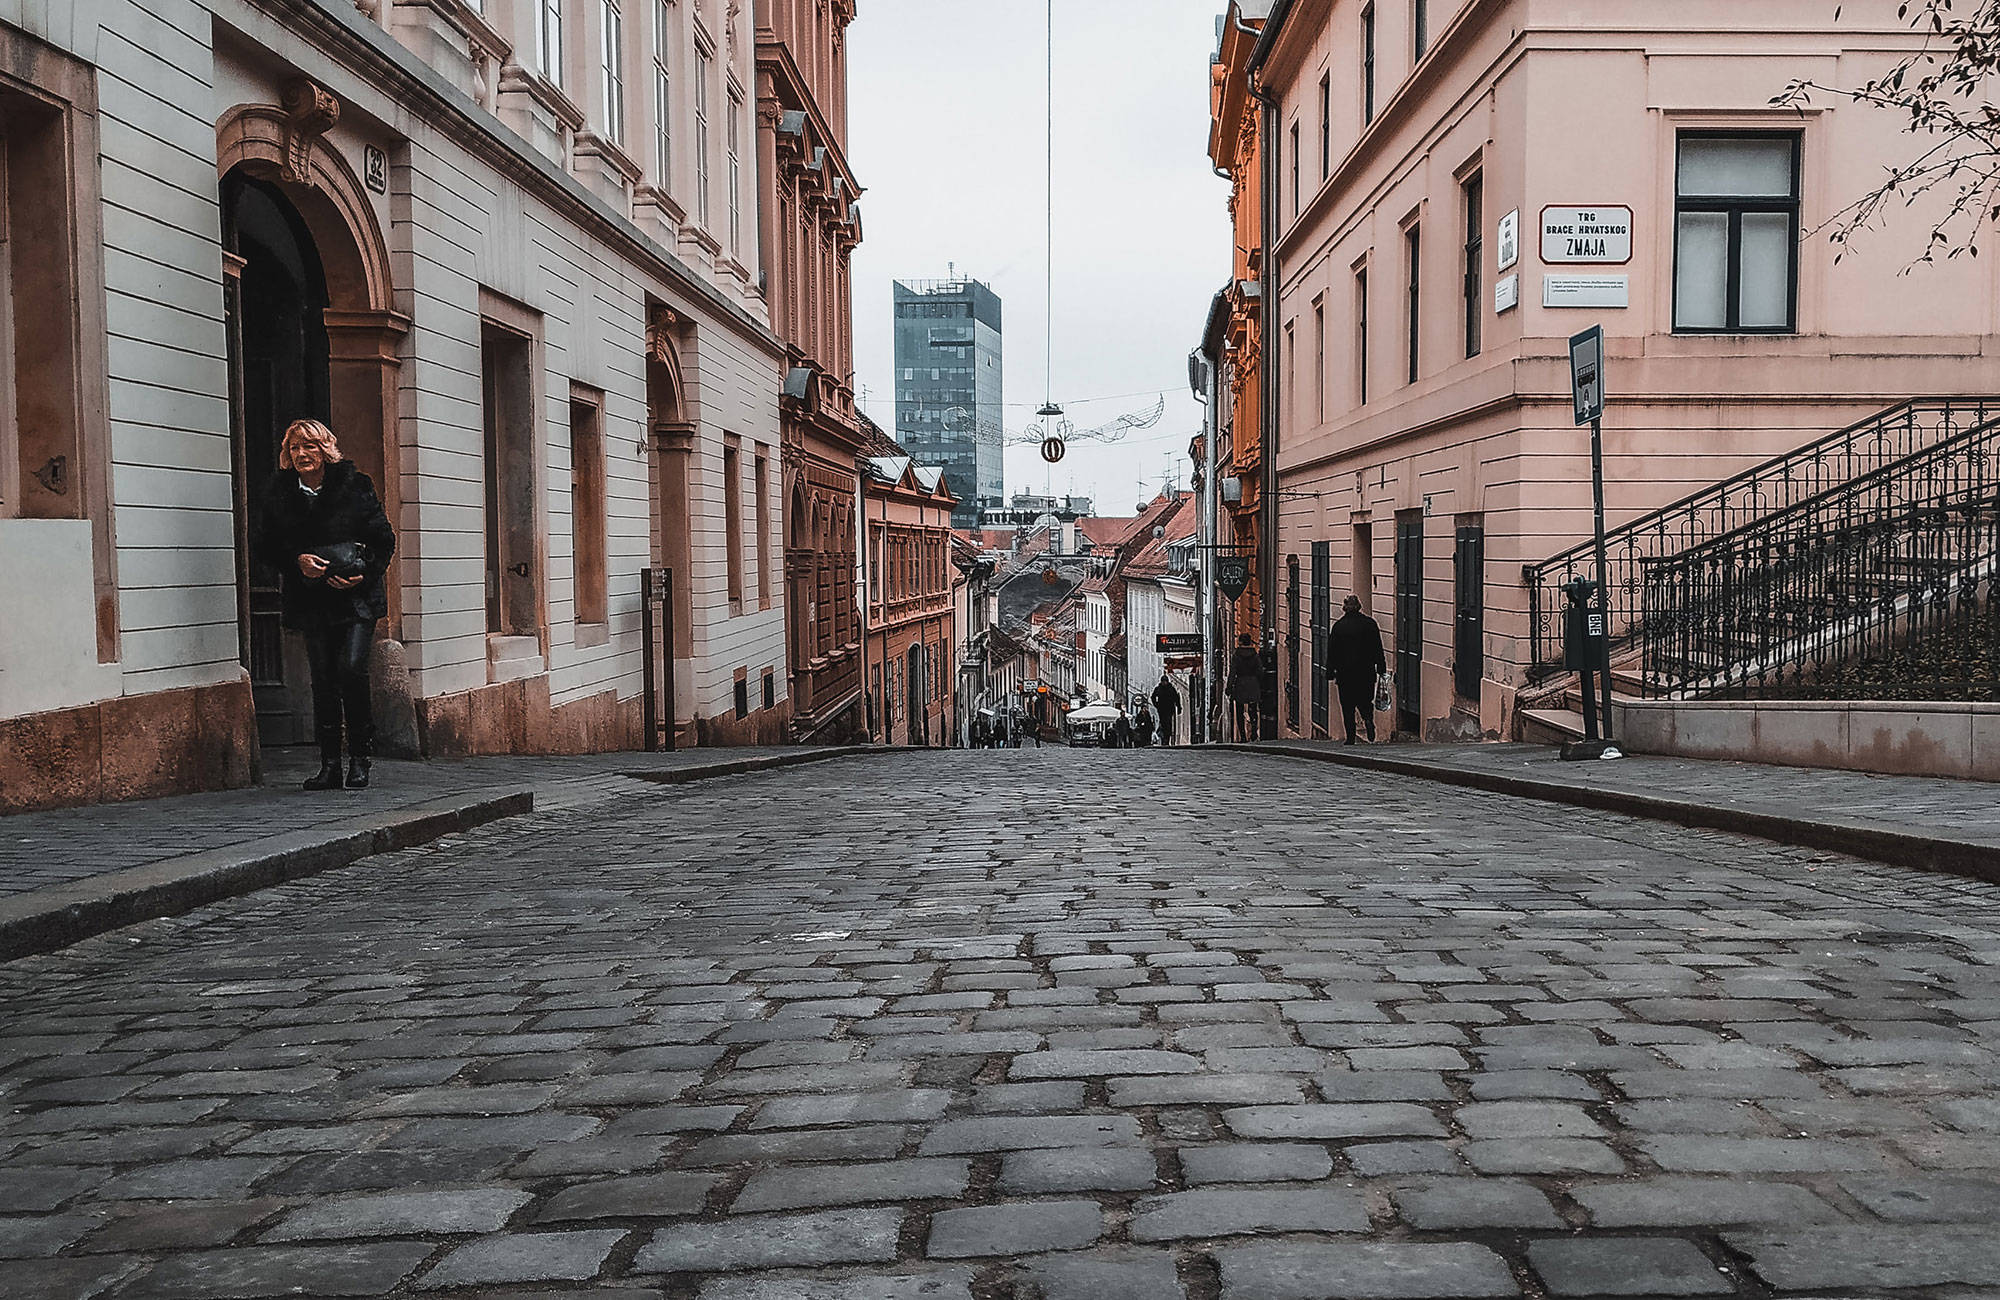 Oude straat in Zagreb, Kroatië | Reizen naar Zagreb | KILROY